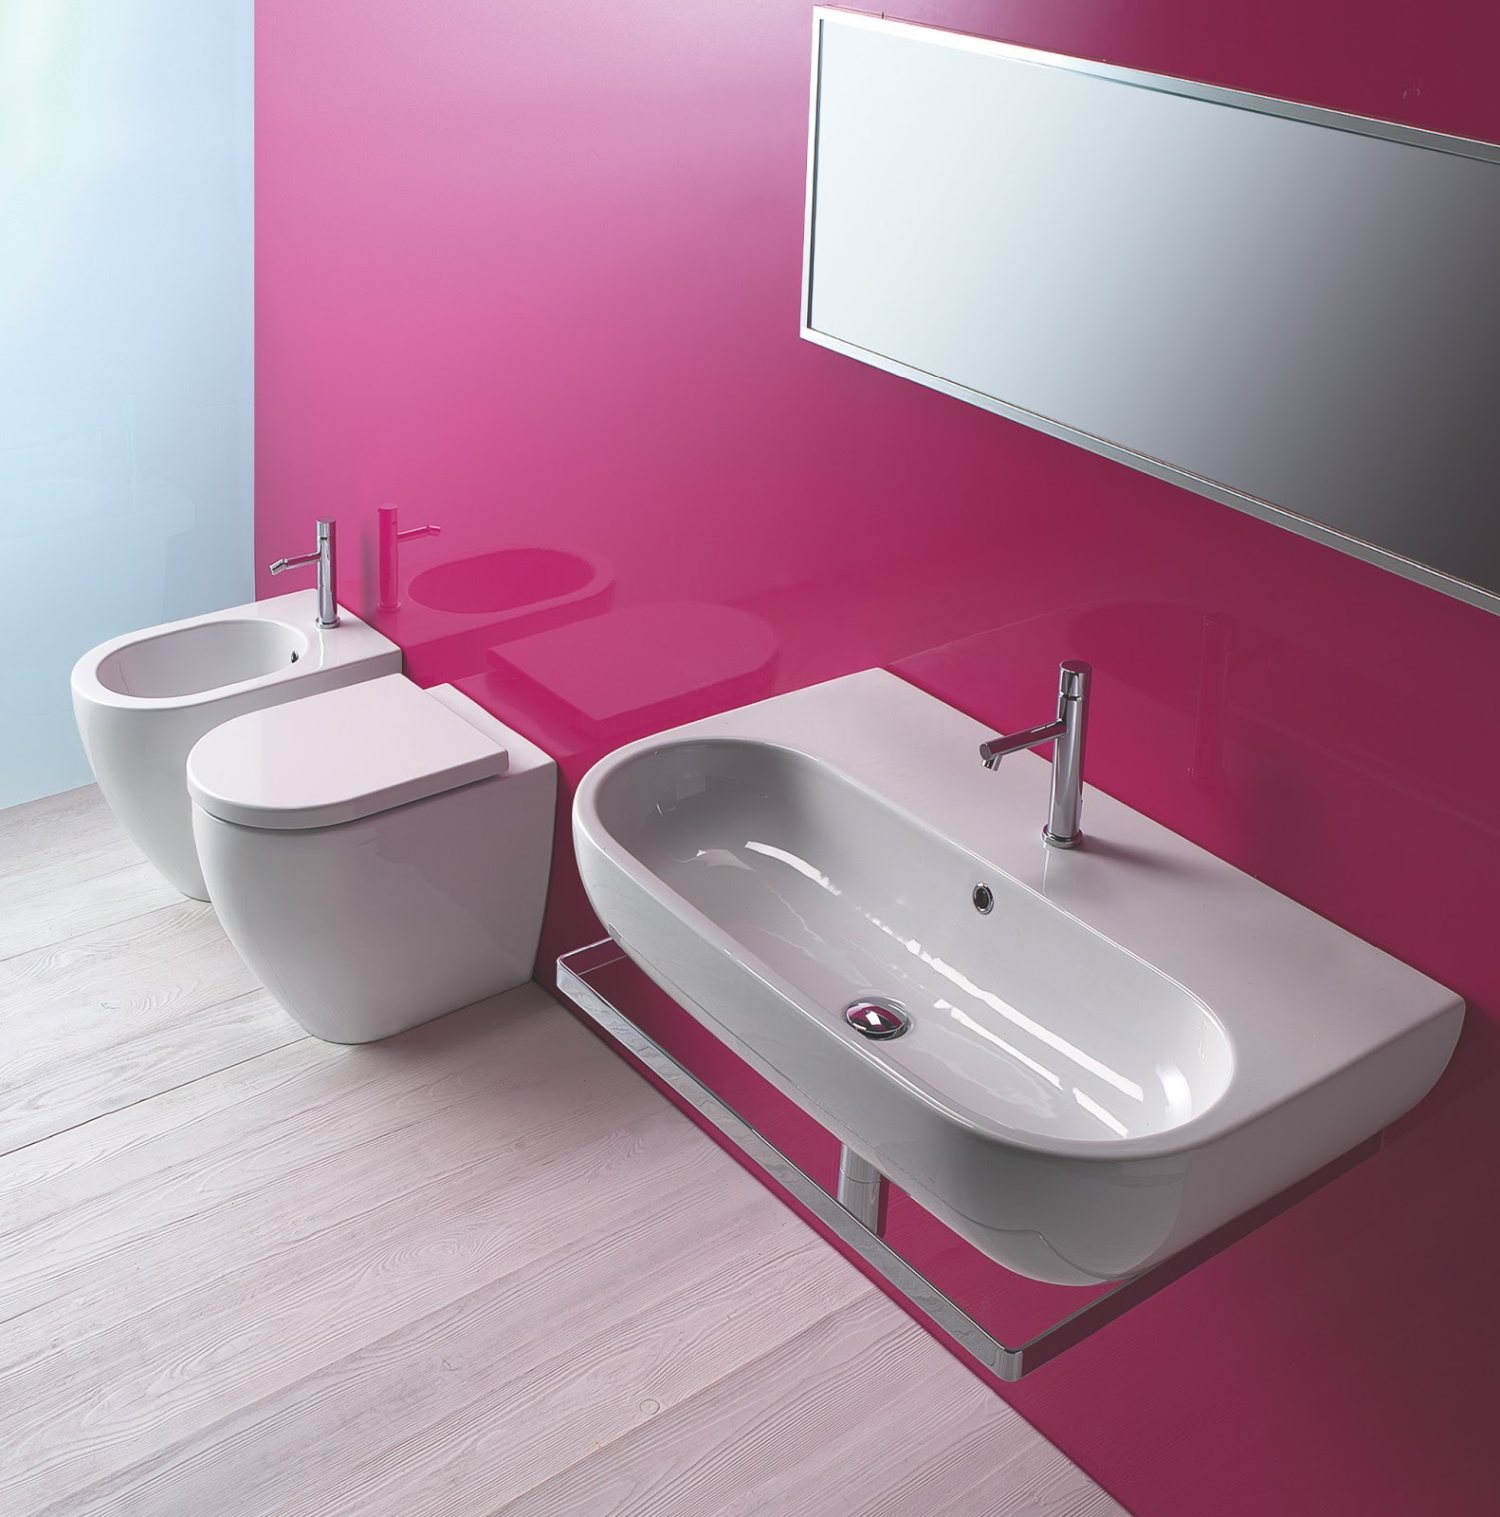 różowa ściana w łazience, kontrastujące kolory w łazience, dwa kolory w łazience